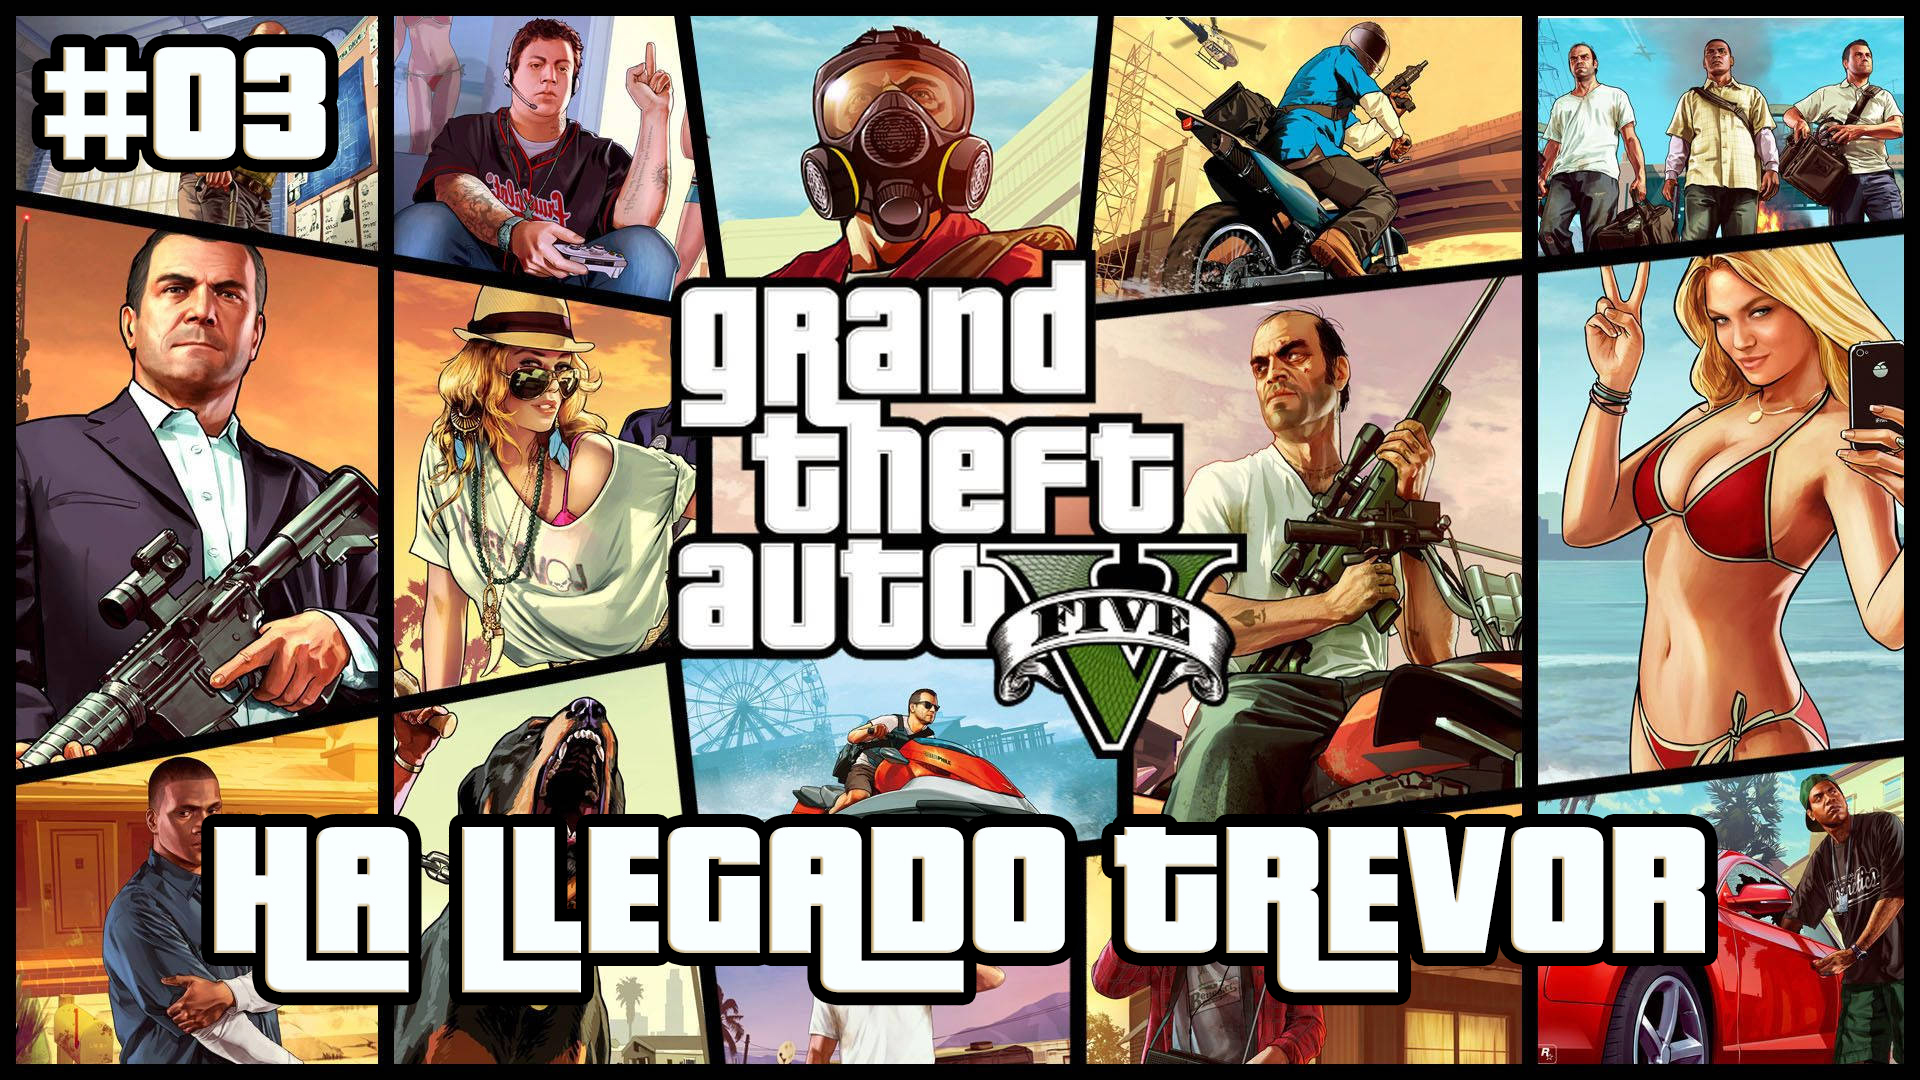 Serie Grand Theft Auto V #3 – Ha Llegado Trevor